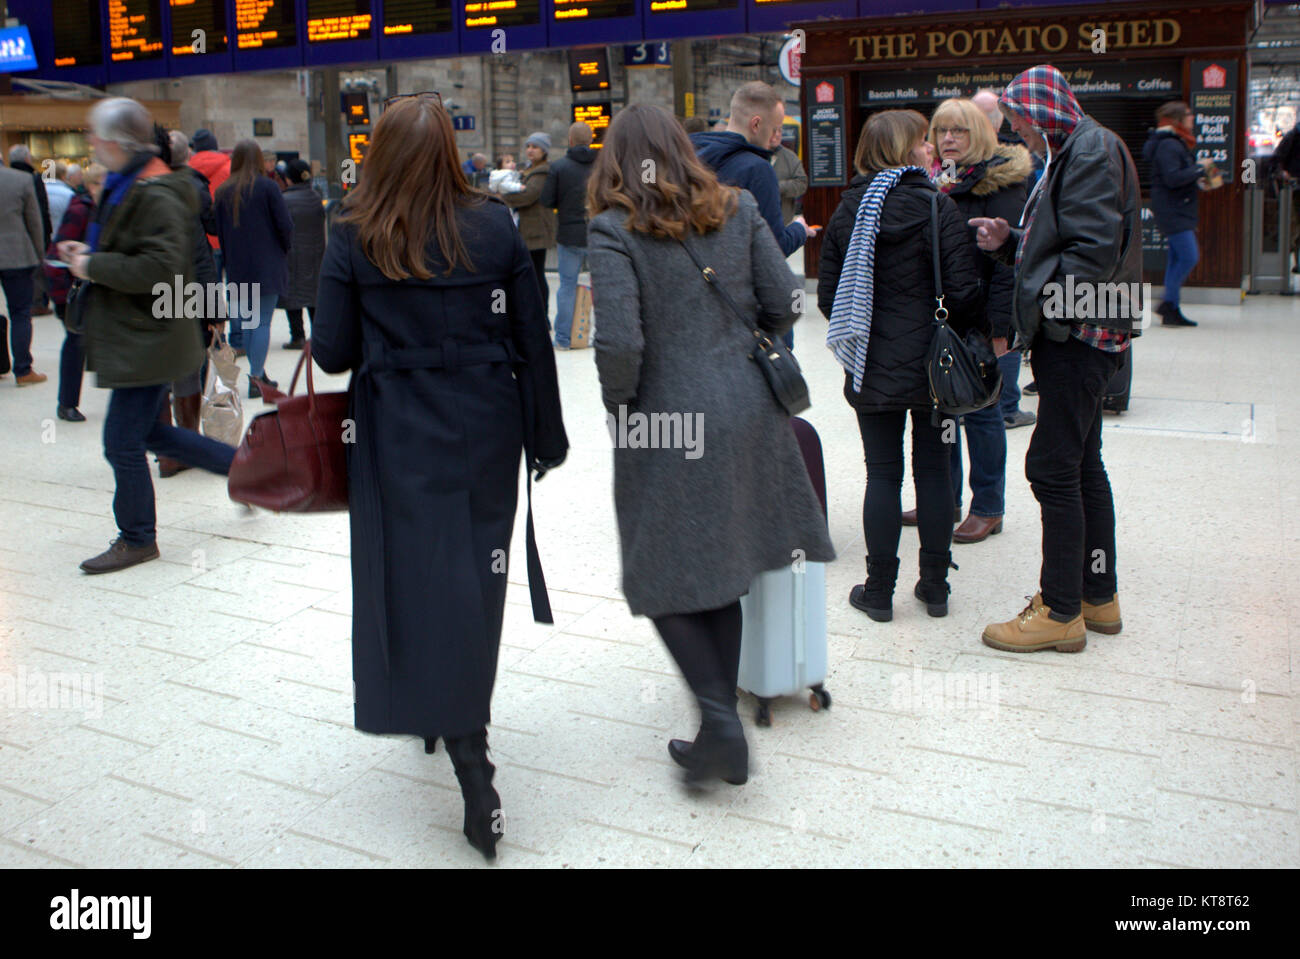 Glasgow, Ecosse, le 22 décembre. Début précoce de la 'Frantic Vendredi' getaway a vu la gare centrale de Glasgow bourdonnement tôt le matin Gerard crédit Ferry/Alamy news Banque D'Images